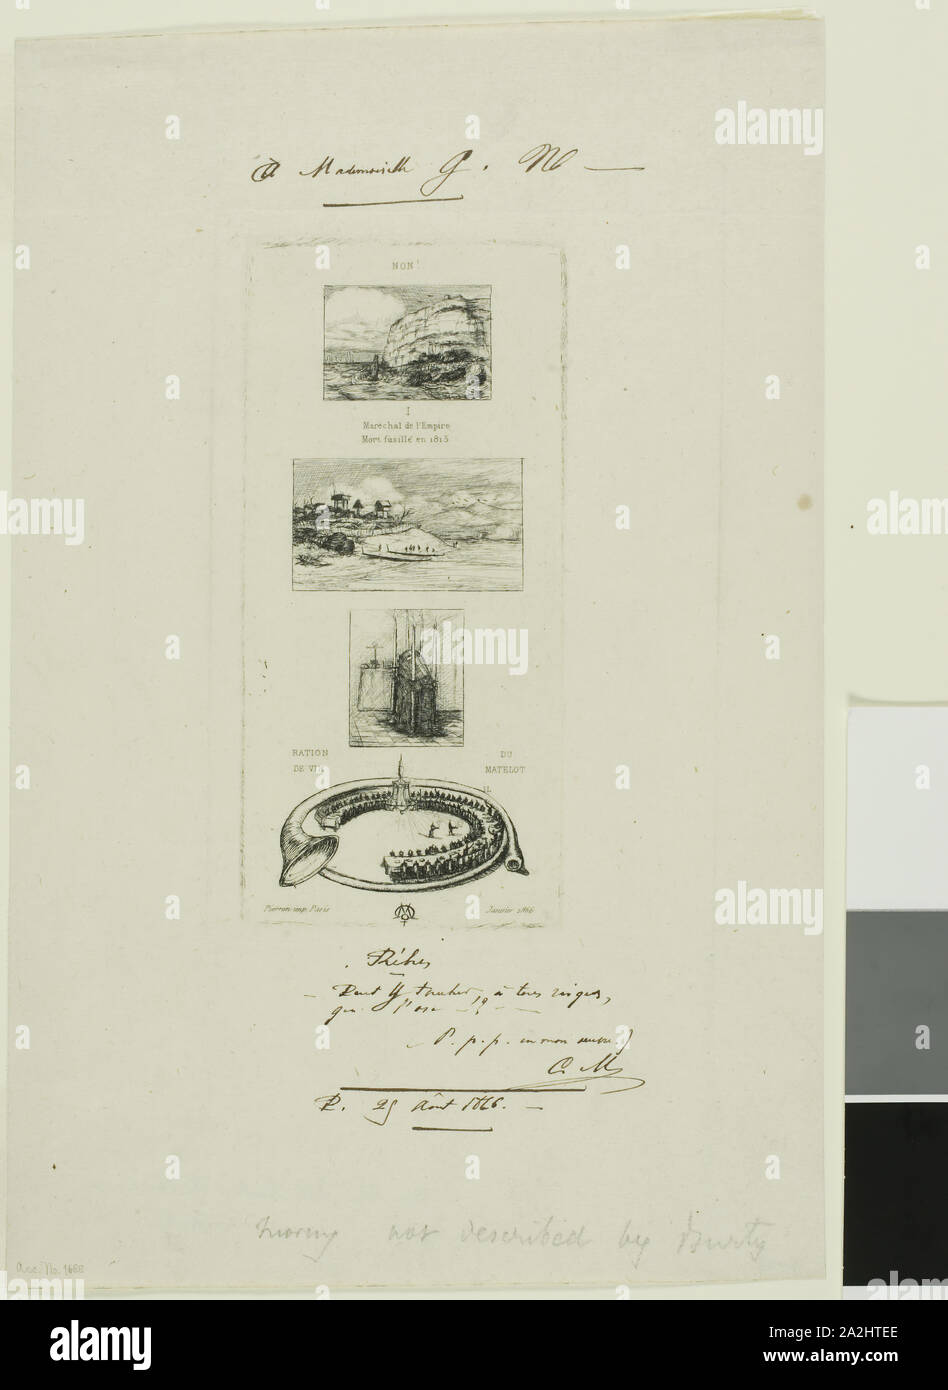 Rebus: 'No, Morny no está muerto para él es casarse de nuevo", de enero de 1866, Charles Meryon (Francés, 1821-1868), impreso por Pierron (francés, 1800), Francia, Aguafuerte sobre papel establecido de marfil, 151 × 70 mm (imagen), 151 × 70 mm (placa), 275 × 178 mm (hoja Foto de stock